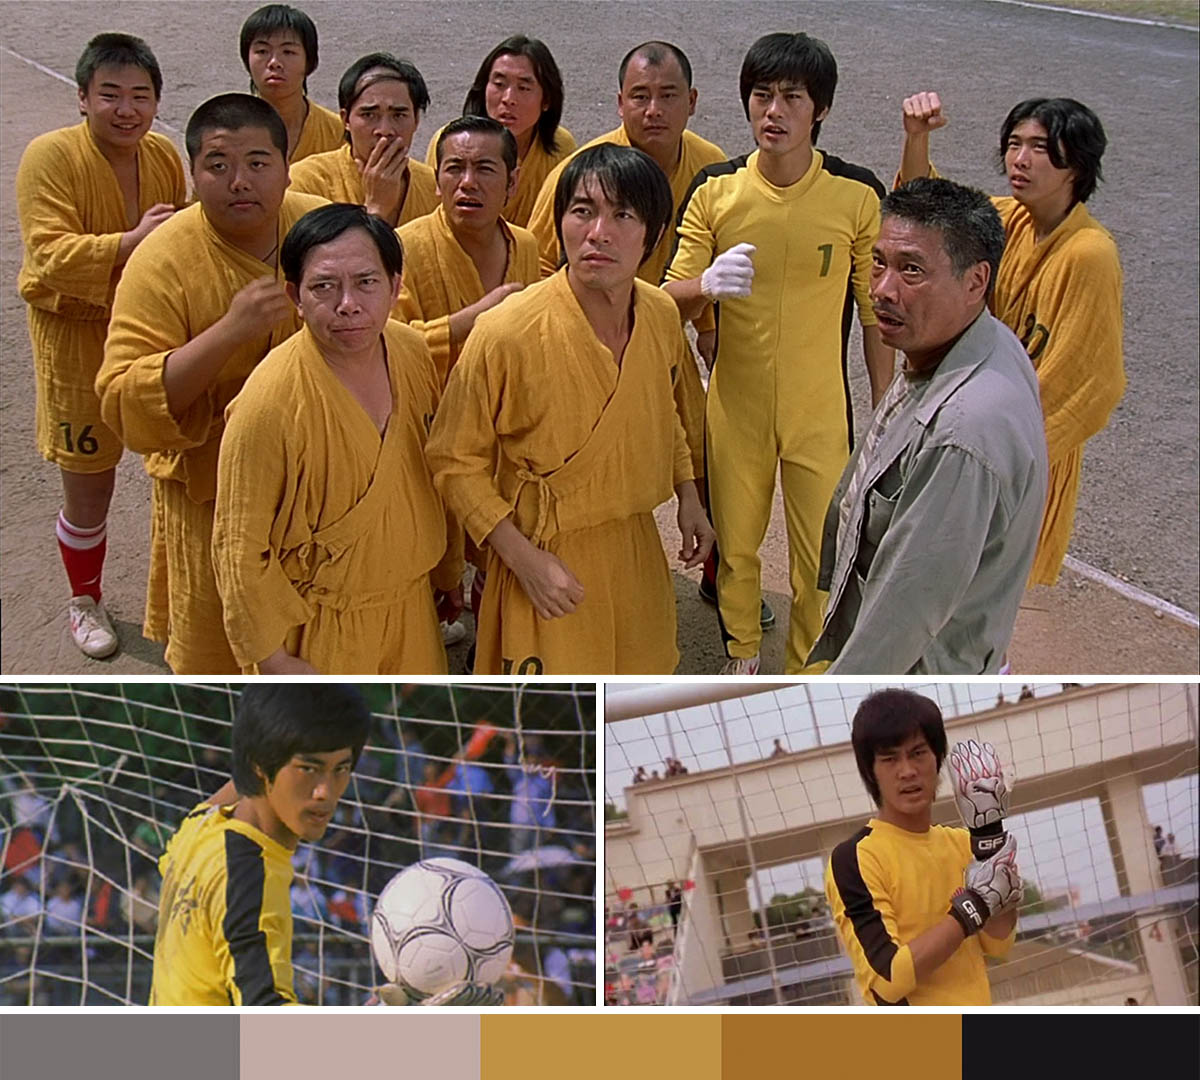 Shaolin Soccer